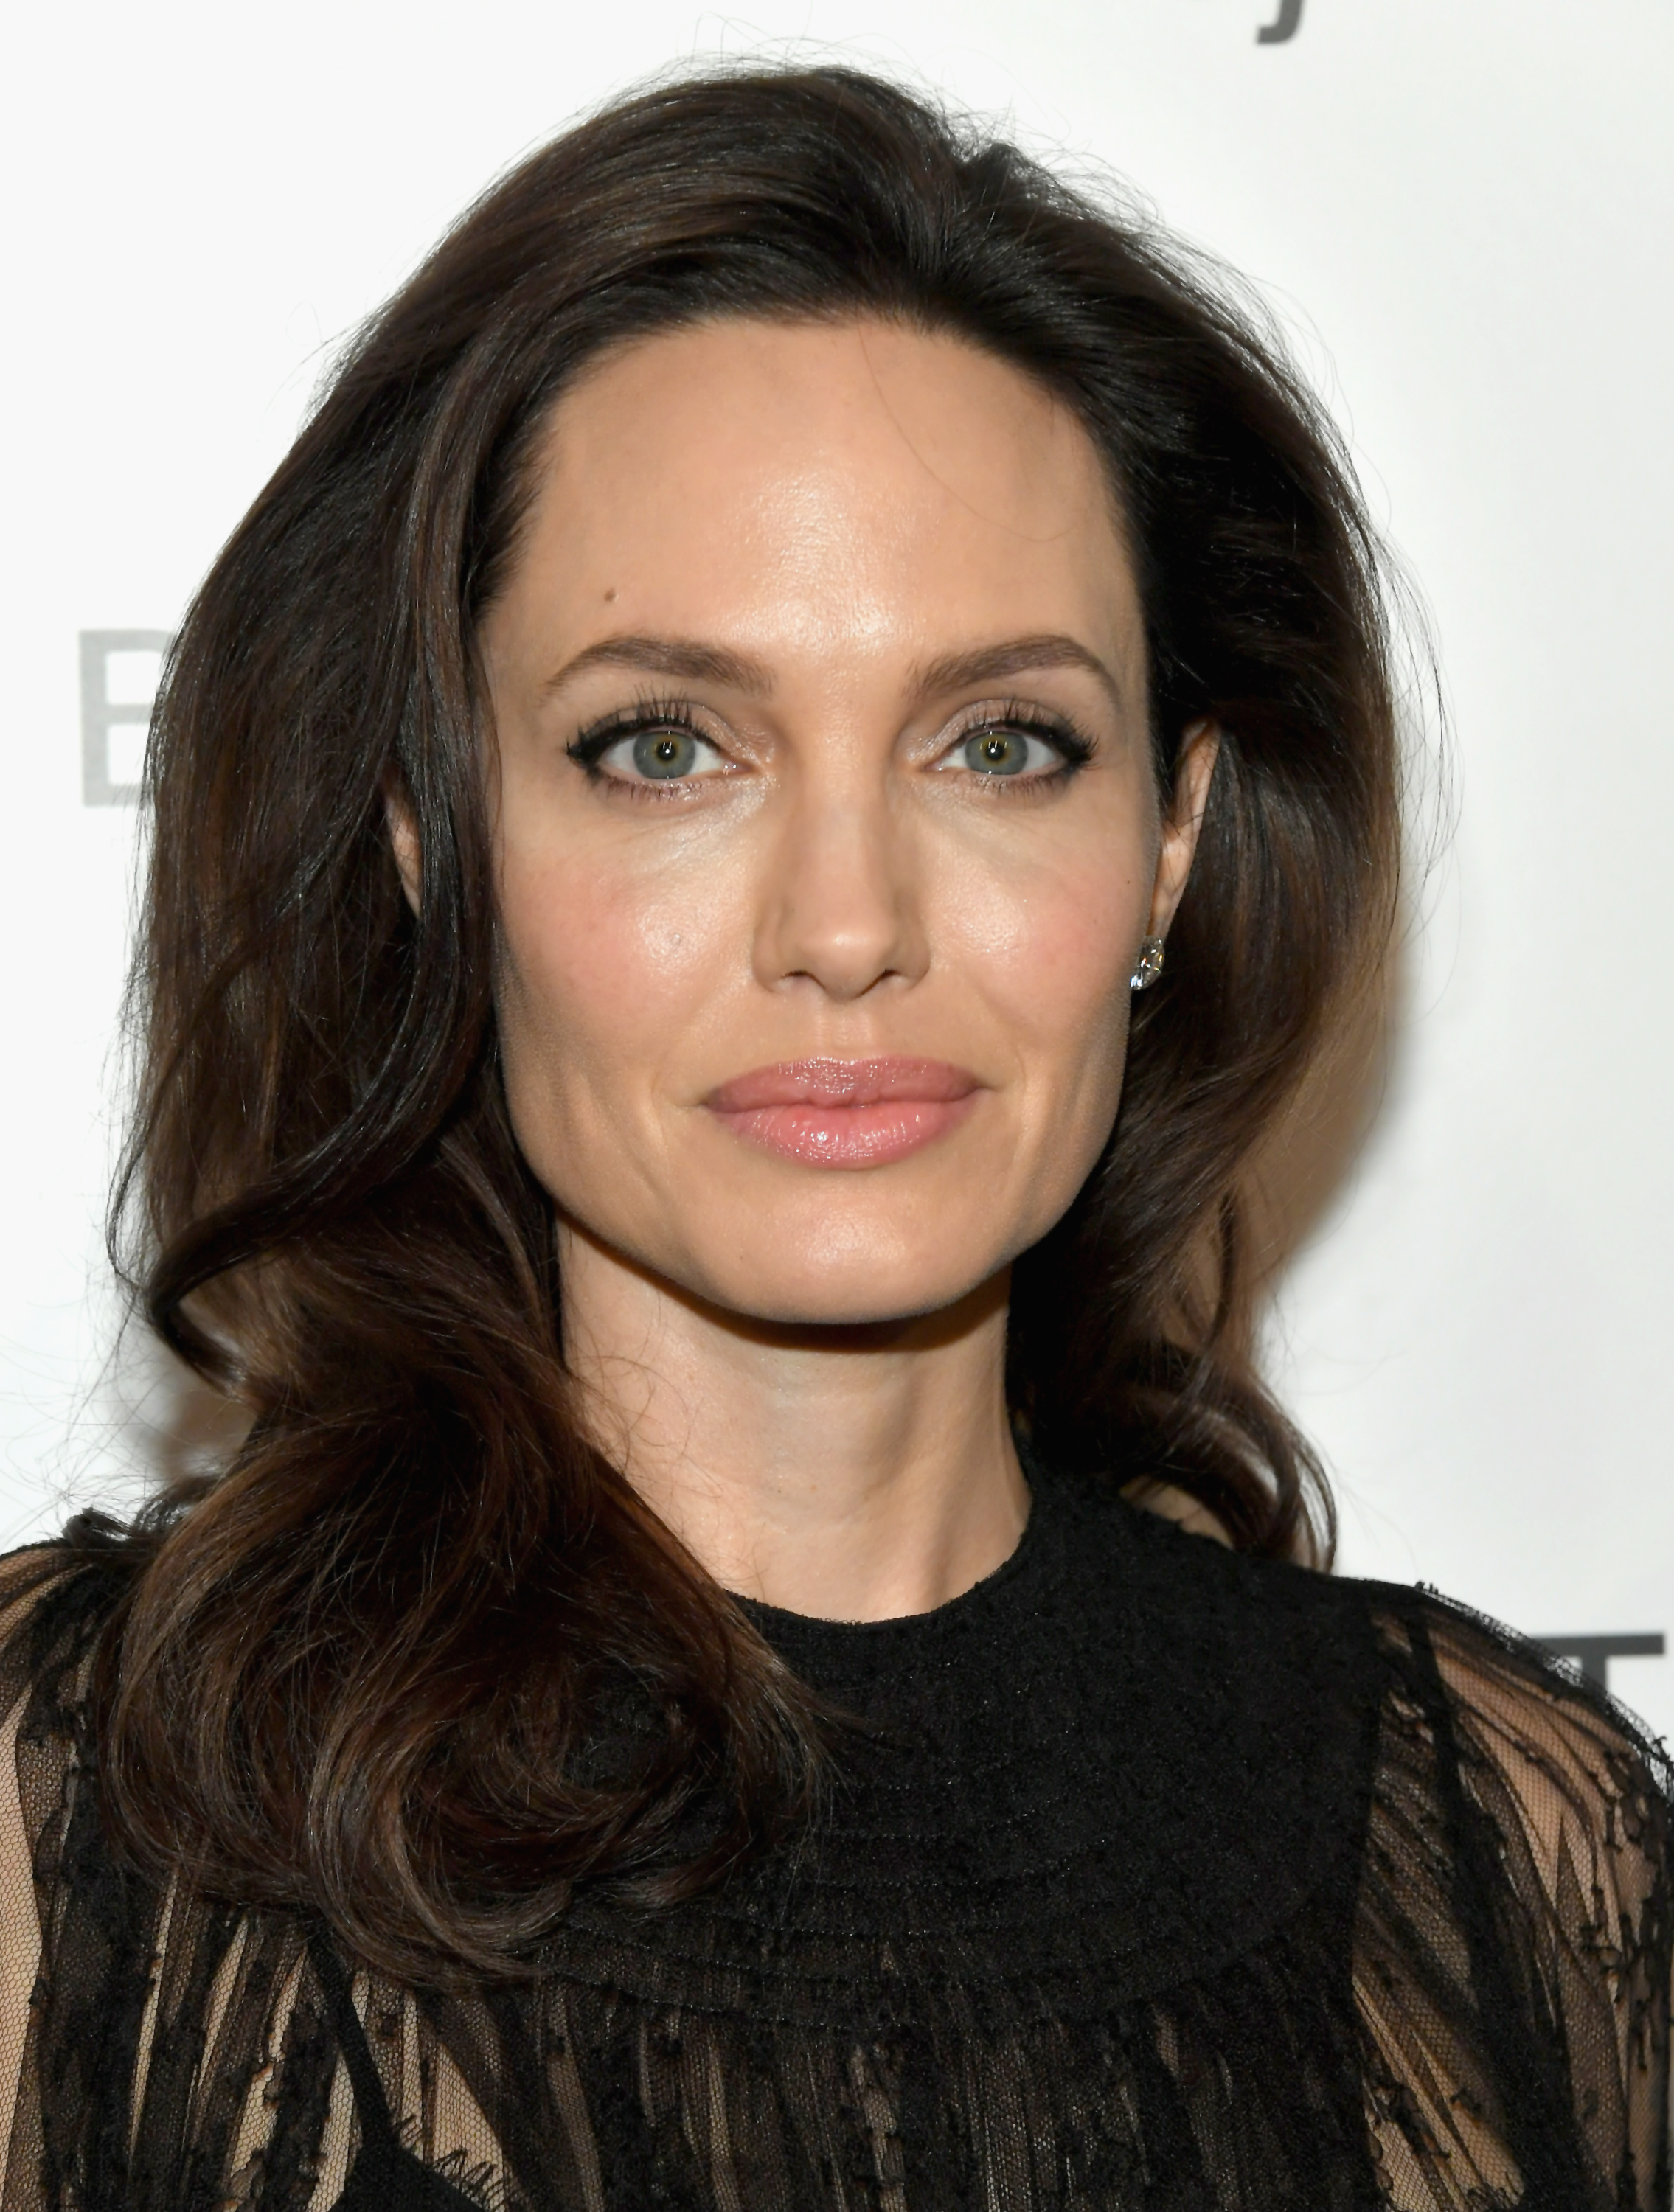 Η δερματολόγος της Angelina Jolie αποκάλυψε όλα τα μυστικά ομορφιάς της!